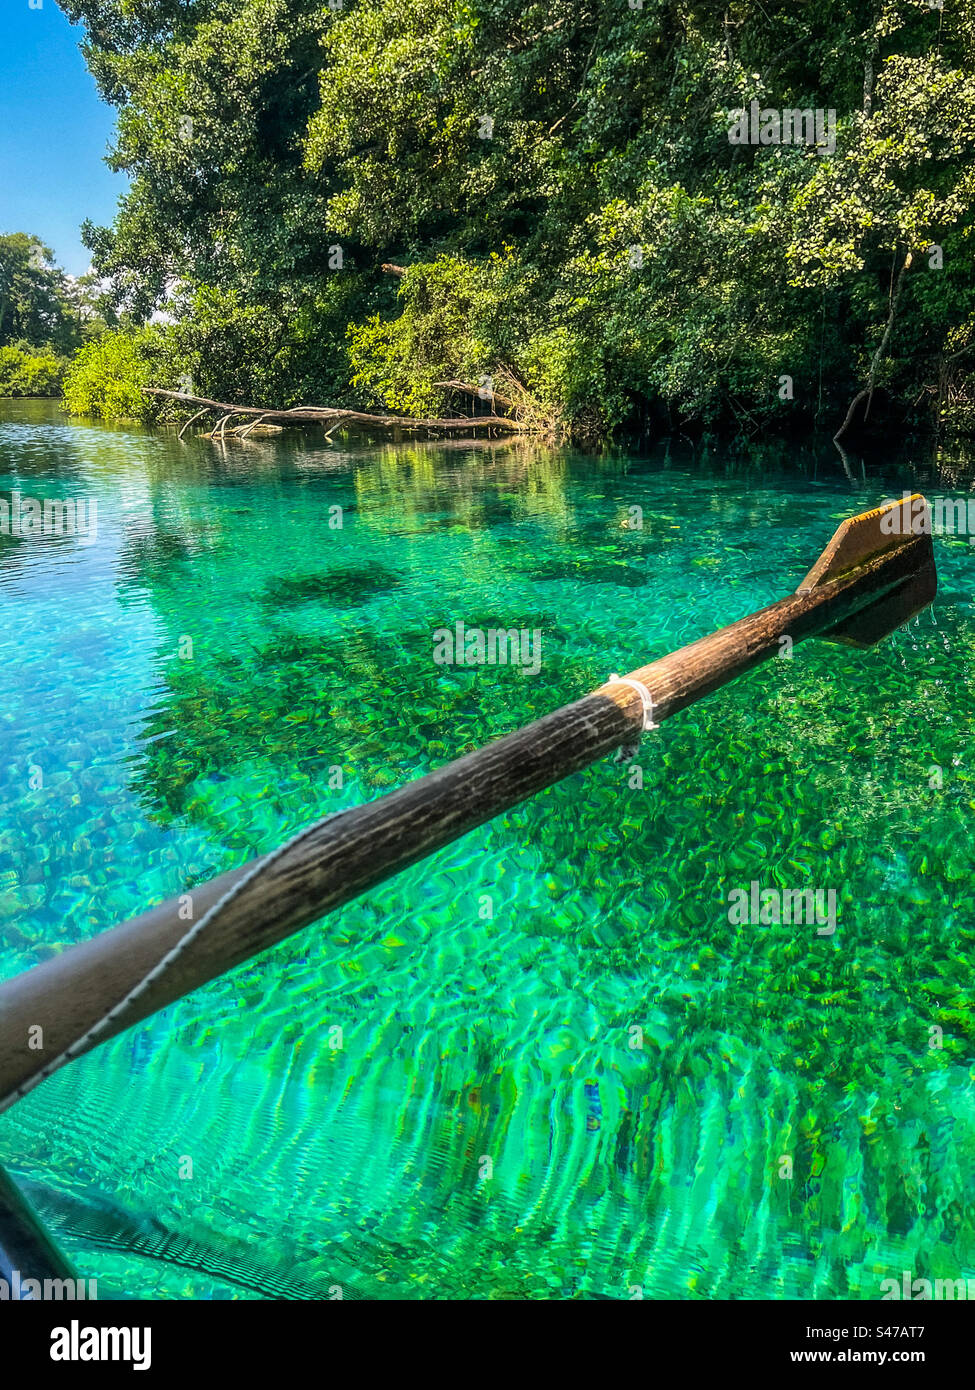 Acque termali cristalline verdi di Sveti Naum, a Ohrid, Macedonia del Nord. Bel lago con barca a remi in legno. Alberi e alghe intorno. Foto Stock